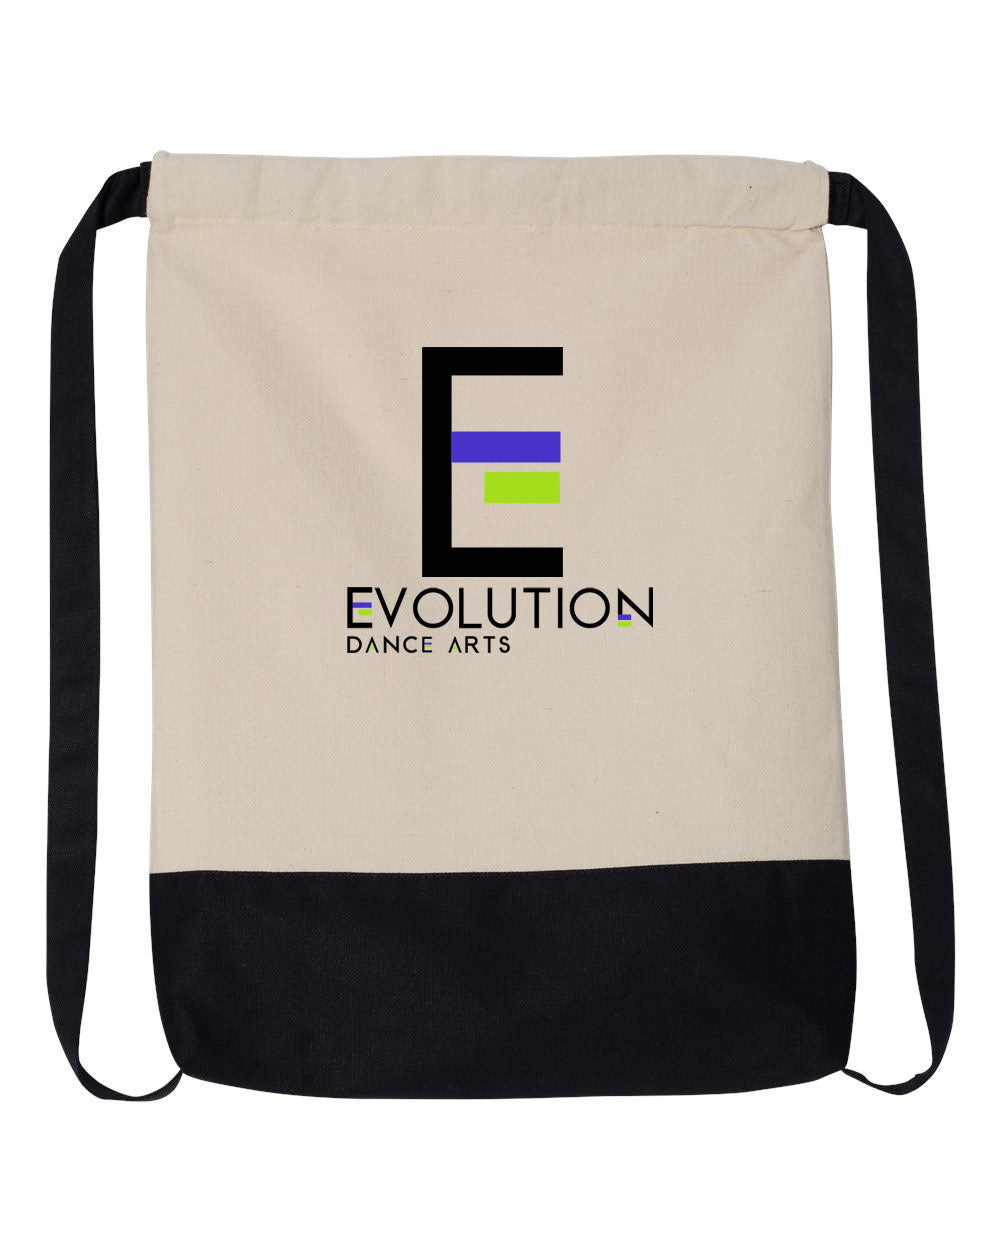 Evolution Dance Arts design 2 Drawstring Bag